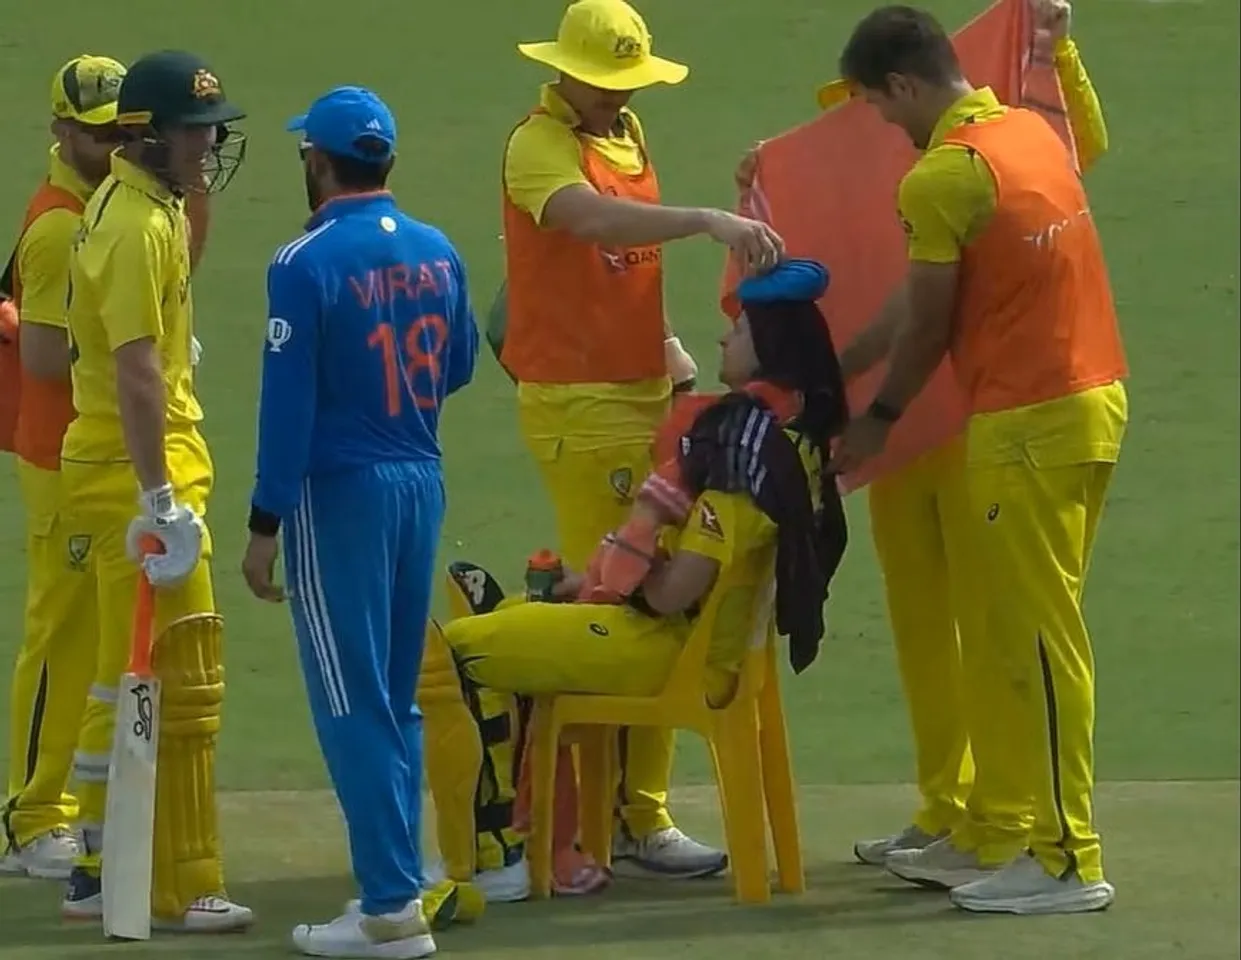 IND vs AUS तीसरे वनडे के दौरान विराट कोहली ने मार्नस लाबुशेन का मजाक उड़ाया; देखें वीडियो